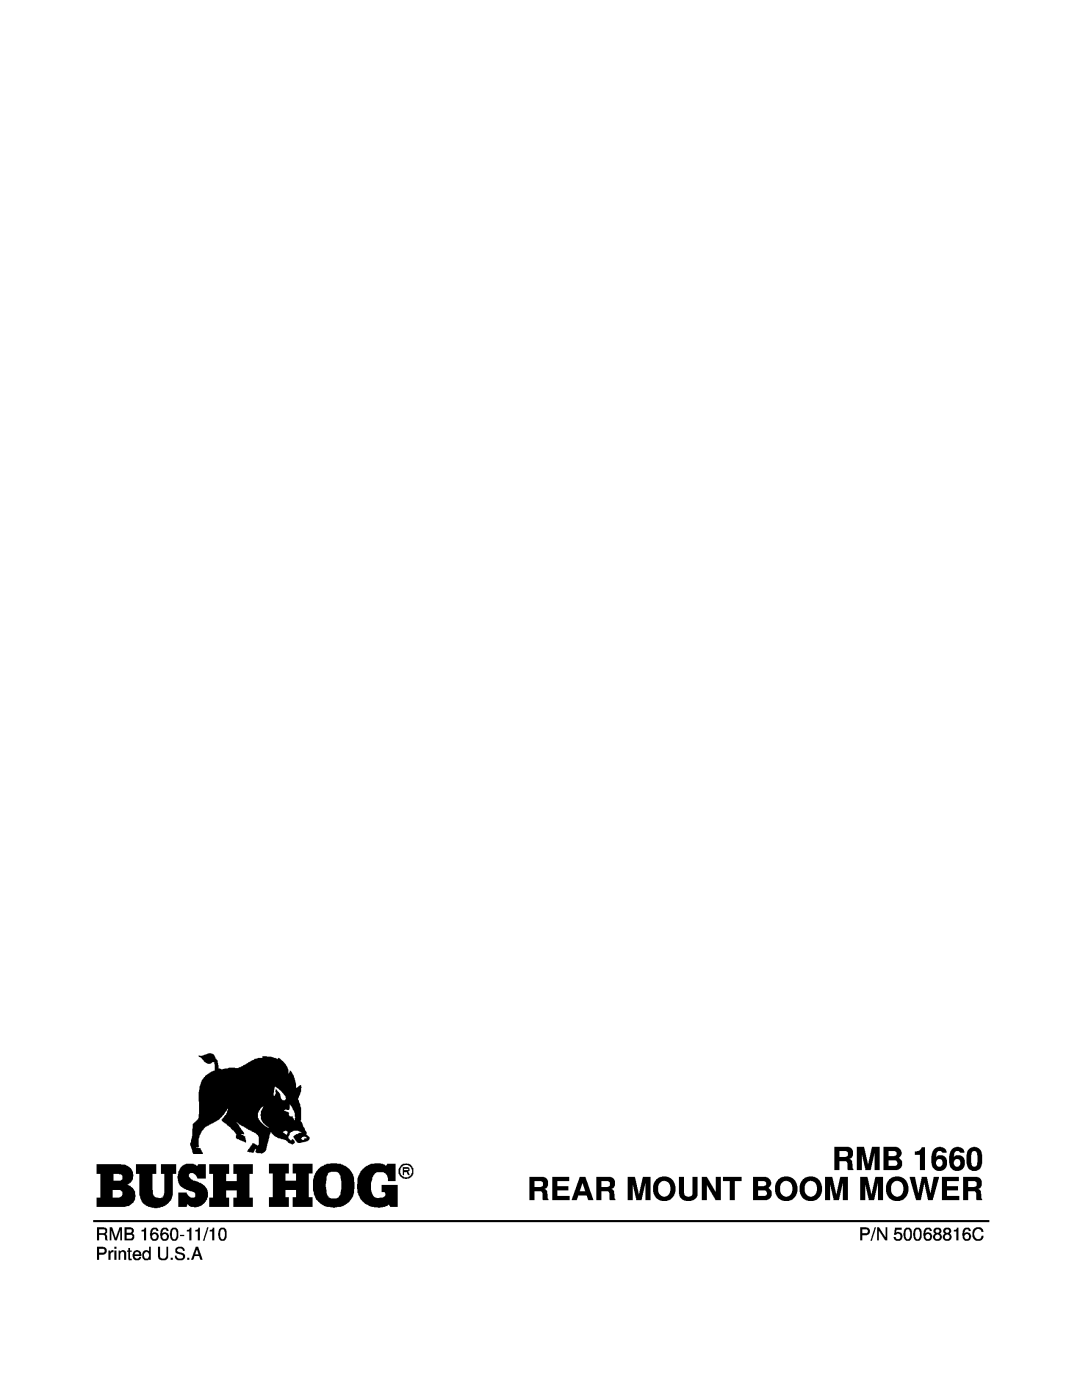 Bush Hog manual RMB 1660 REAR MOUNT BOOM MOWER, RMB 1660-11/10, P/N 50068816C, Printed U.S.A 